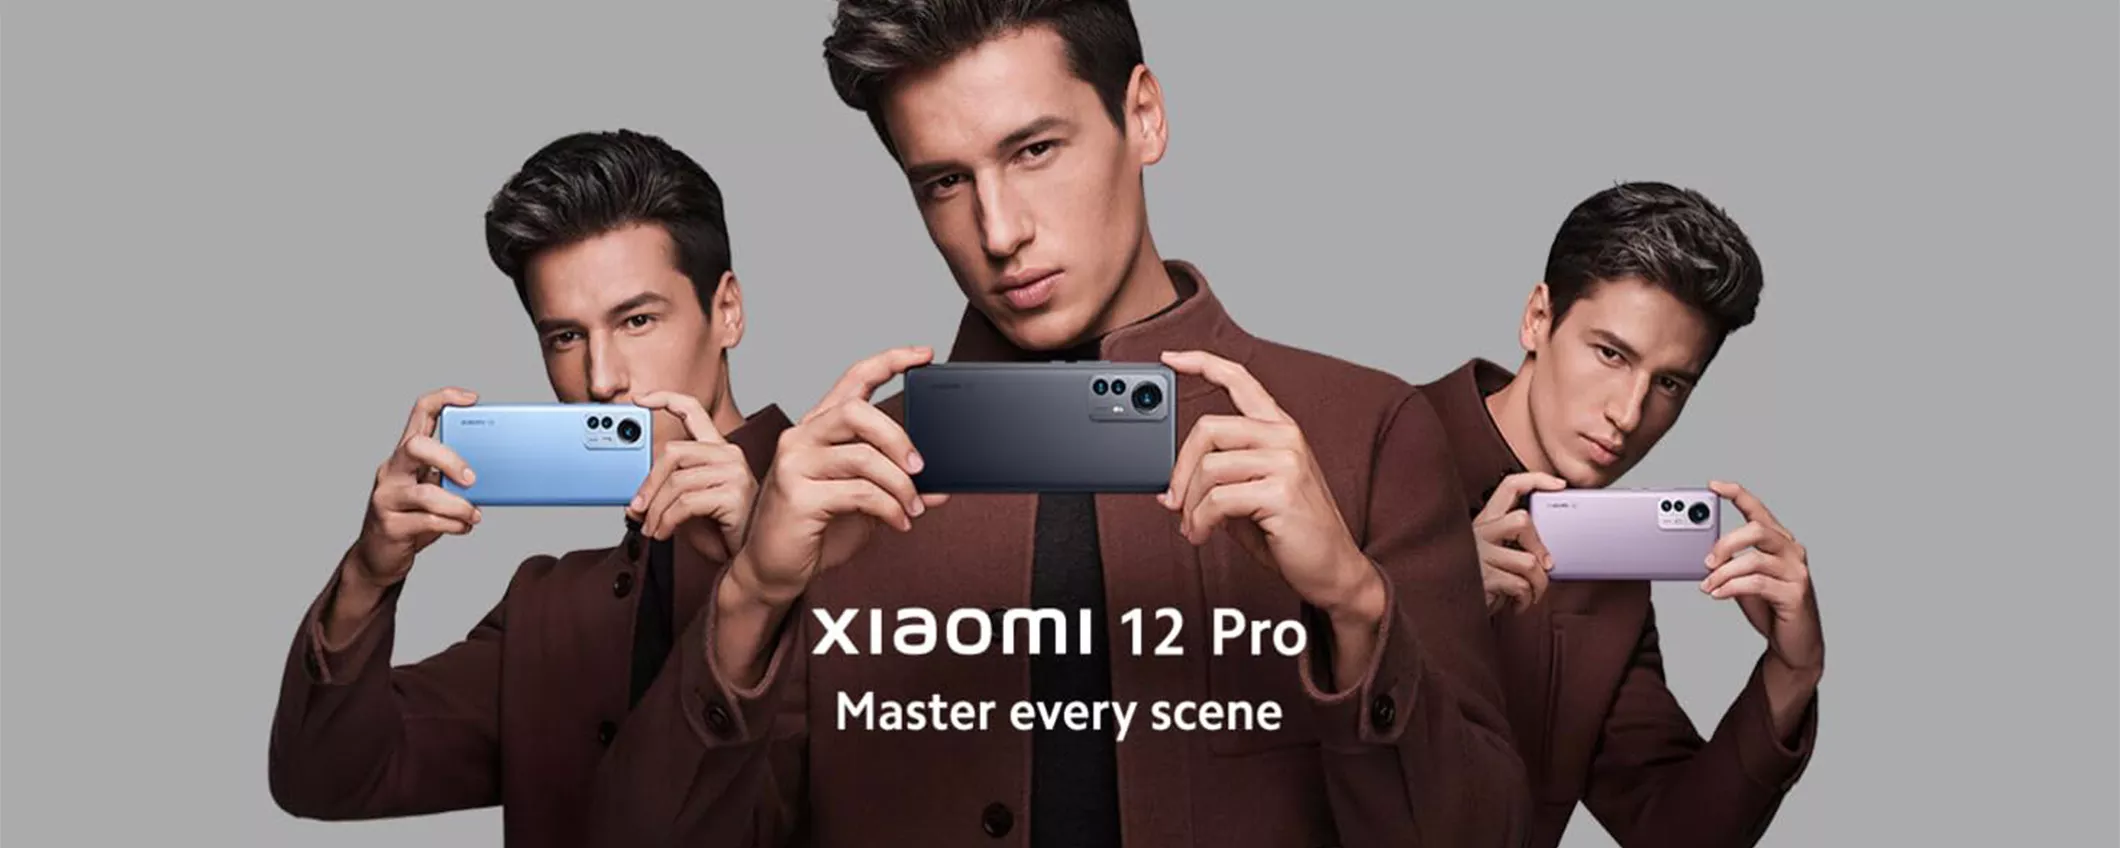 Xiaomi 12 Pro: tecnologia e stile ad un PREZZO IMBATTIBILE